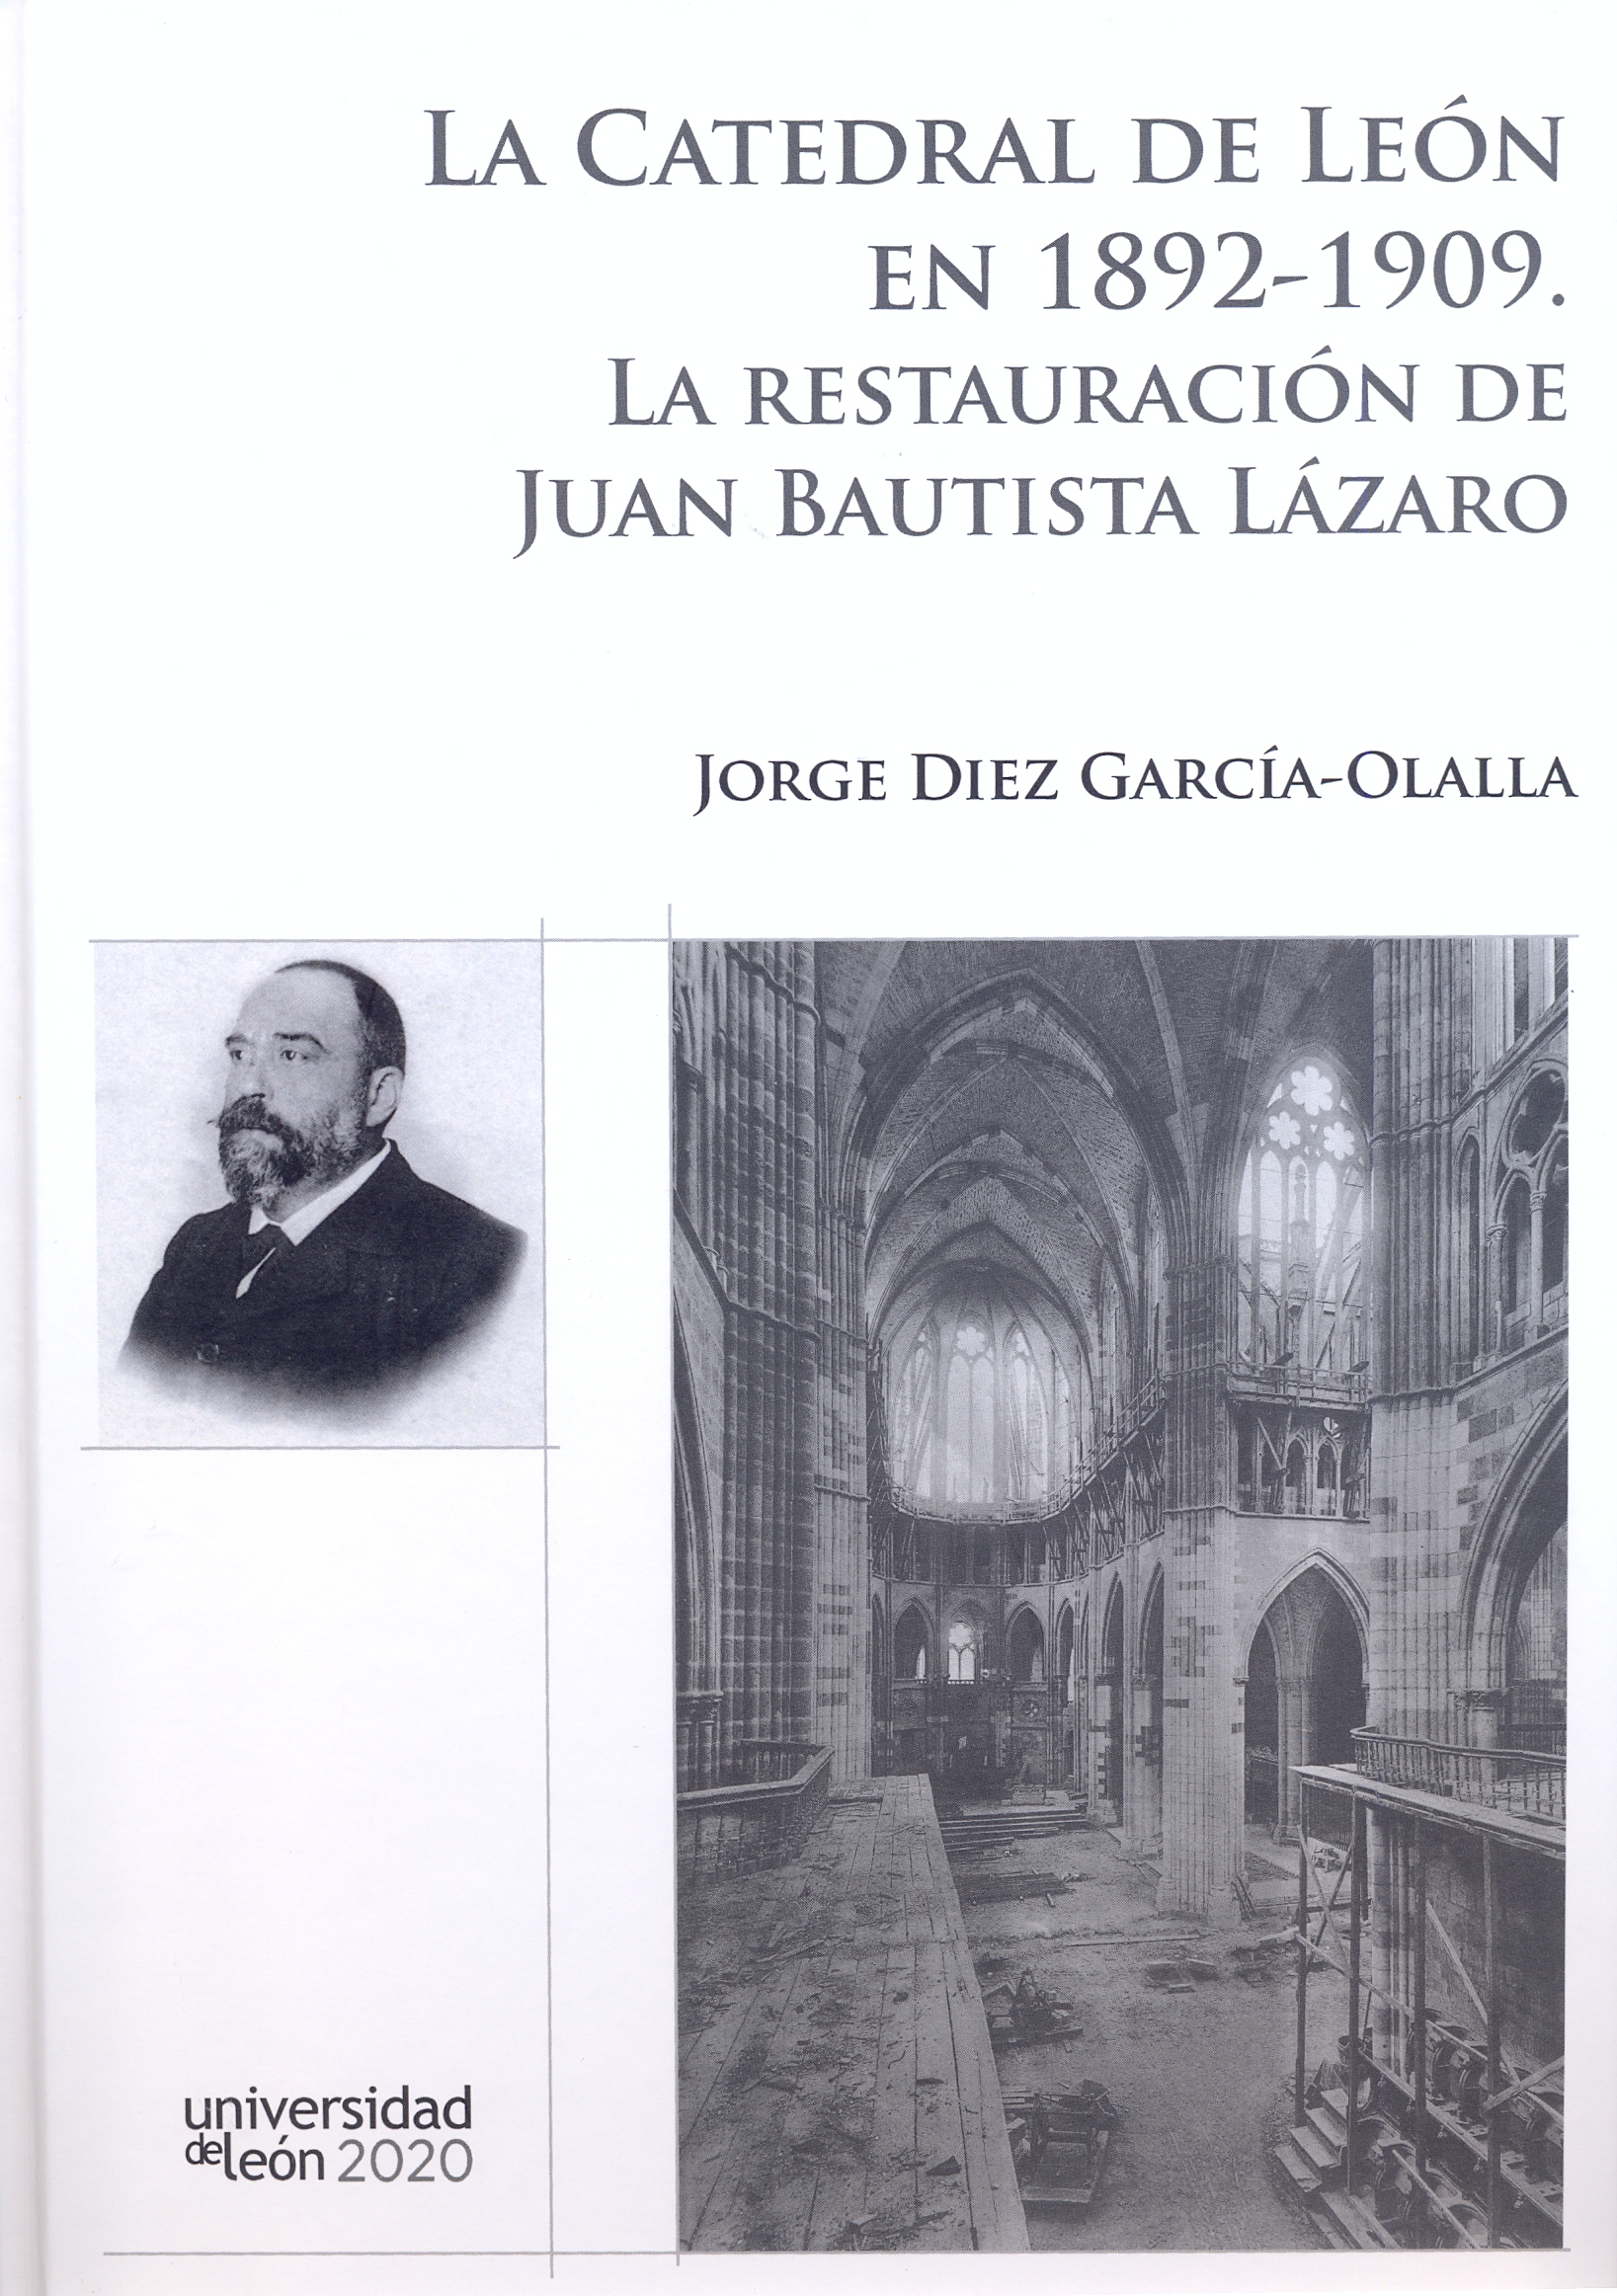 Imagen de portada del libro La Catedral de León en 1892-1909